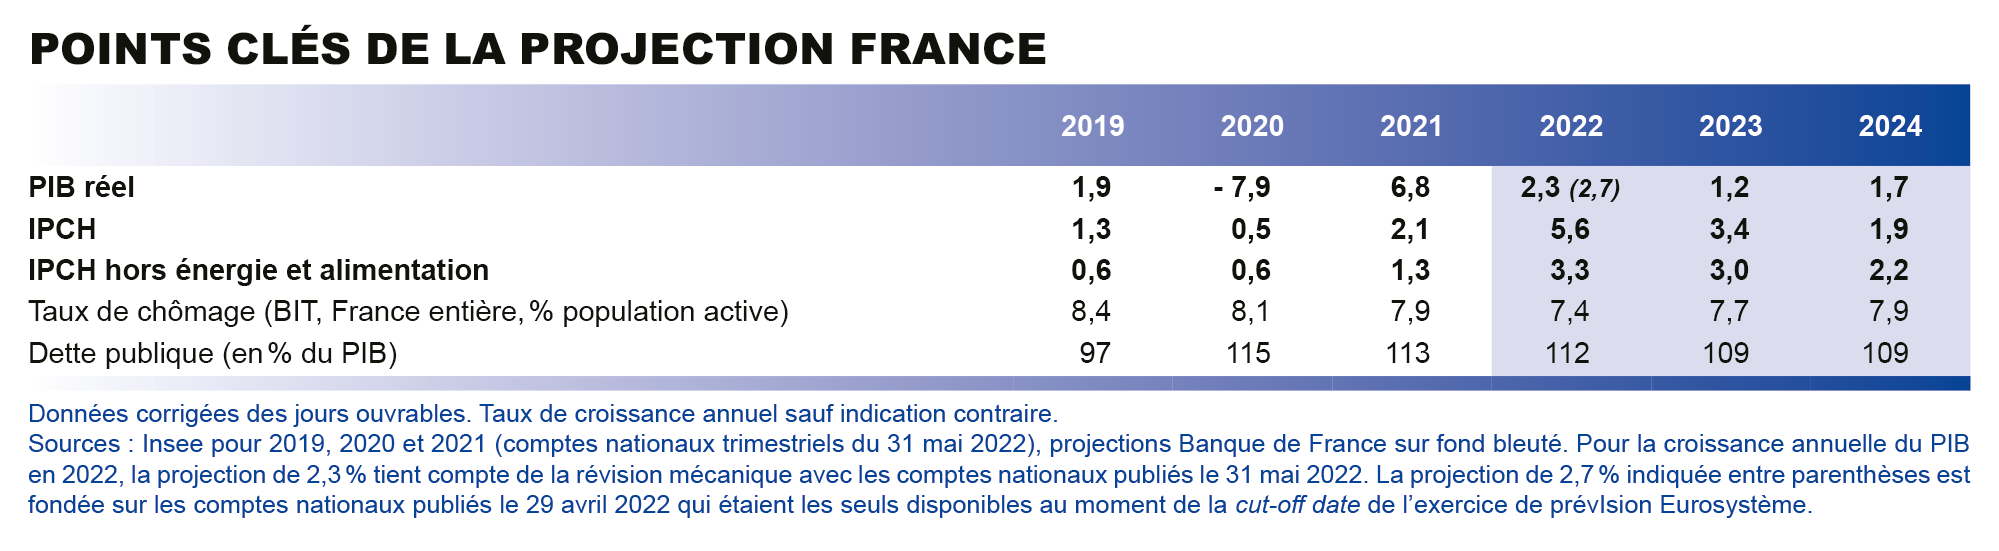 Automobile : le marché français a retrouvé la santé en 2023, avec